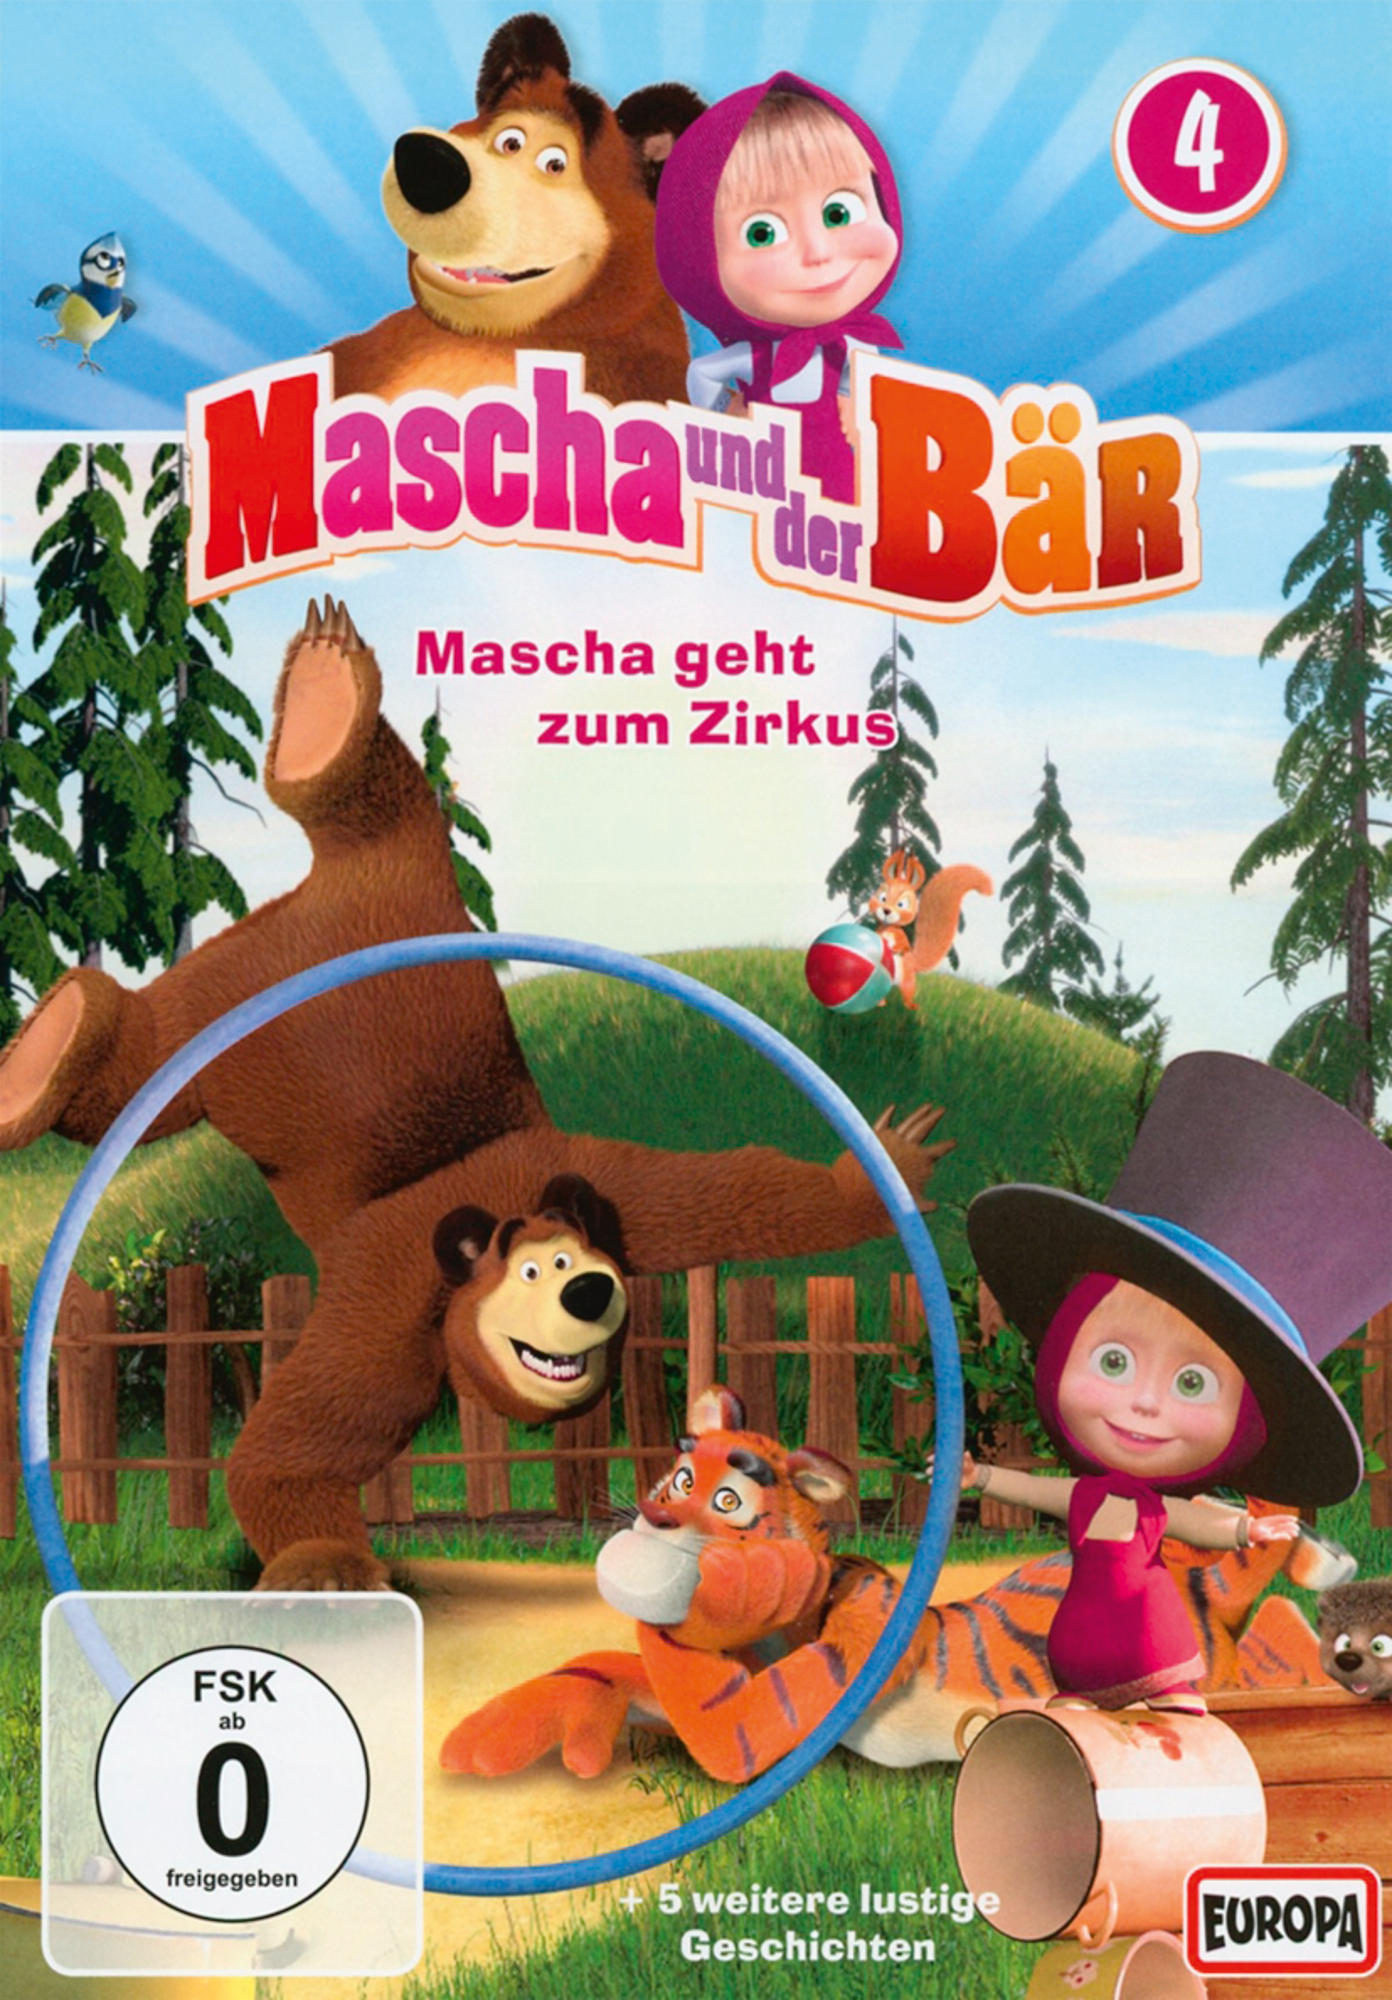 Mascha und der DVD Bär, 4 Vol